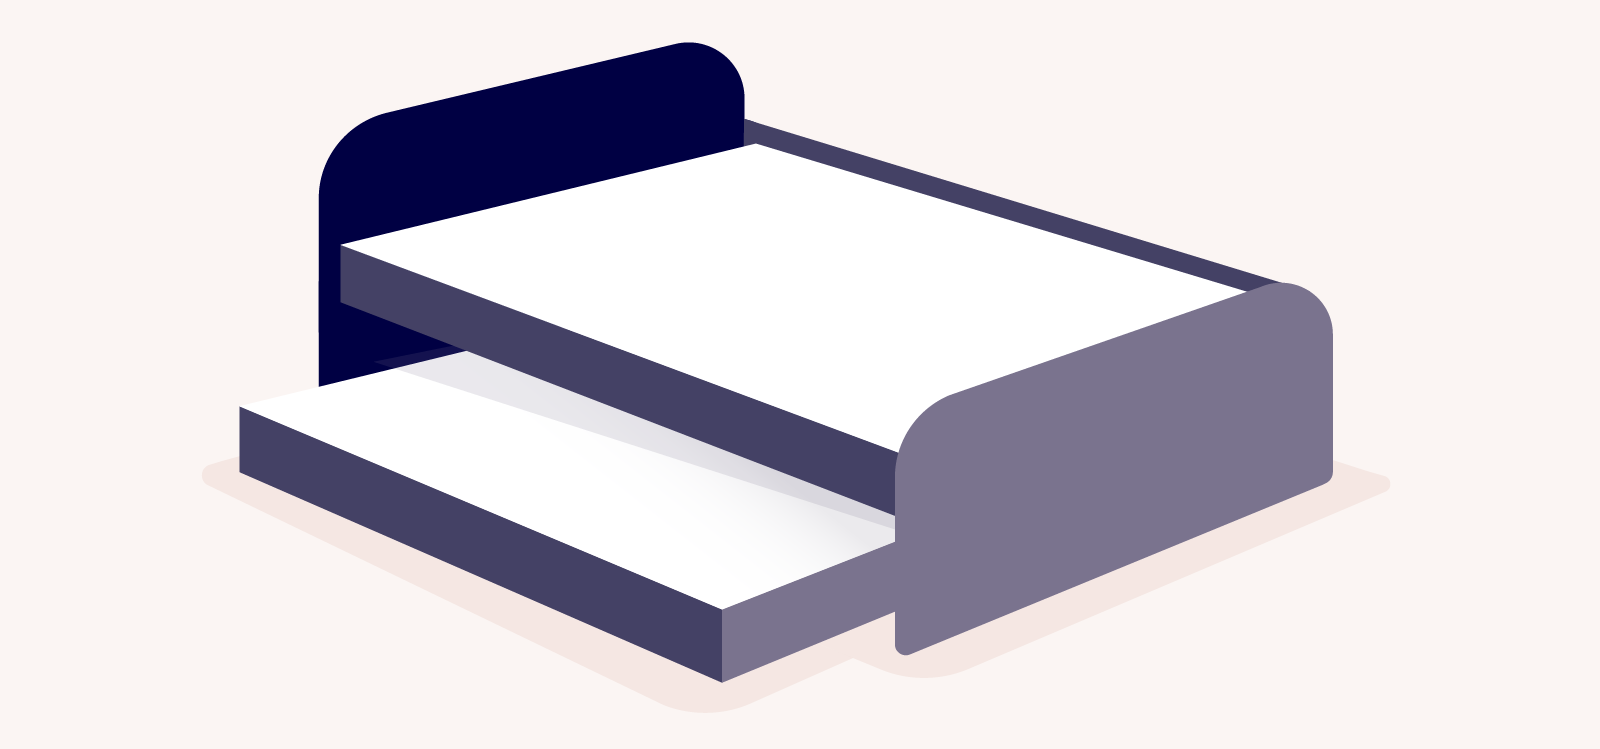 types of bed frames: illustration of a trundle bed frame